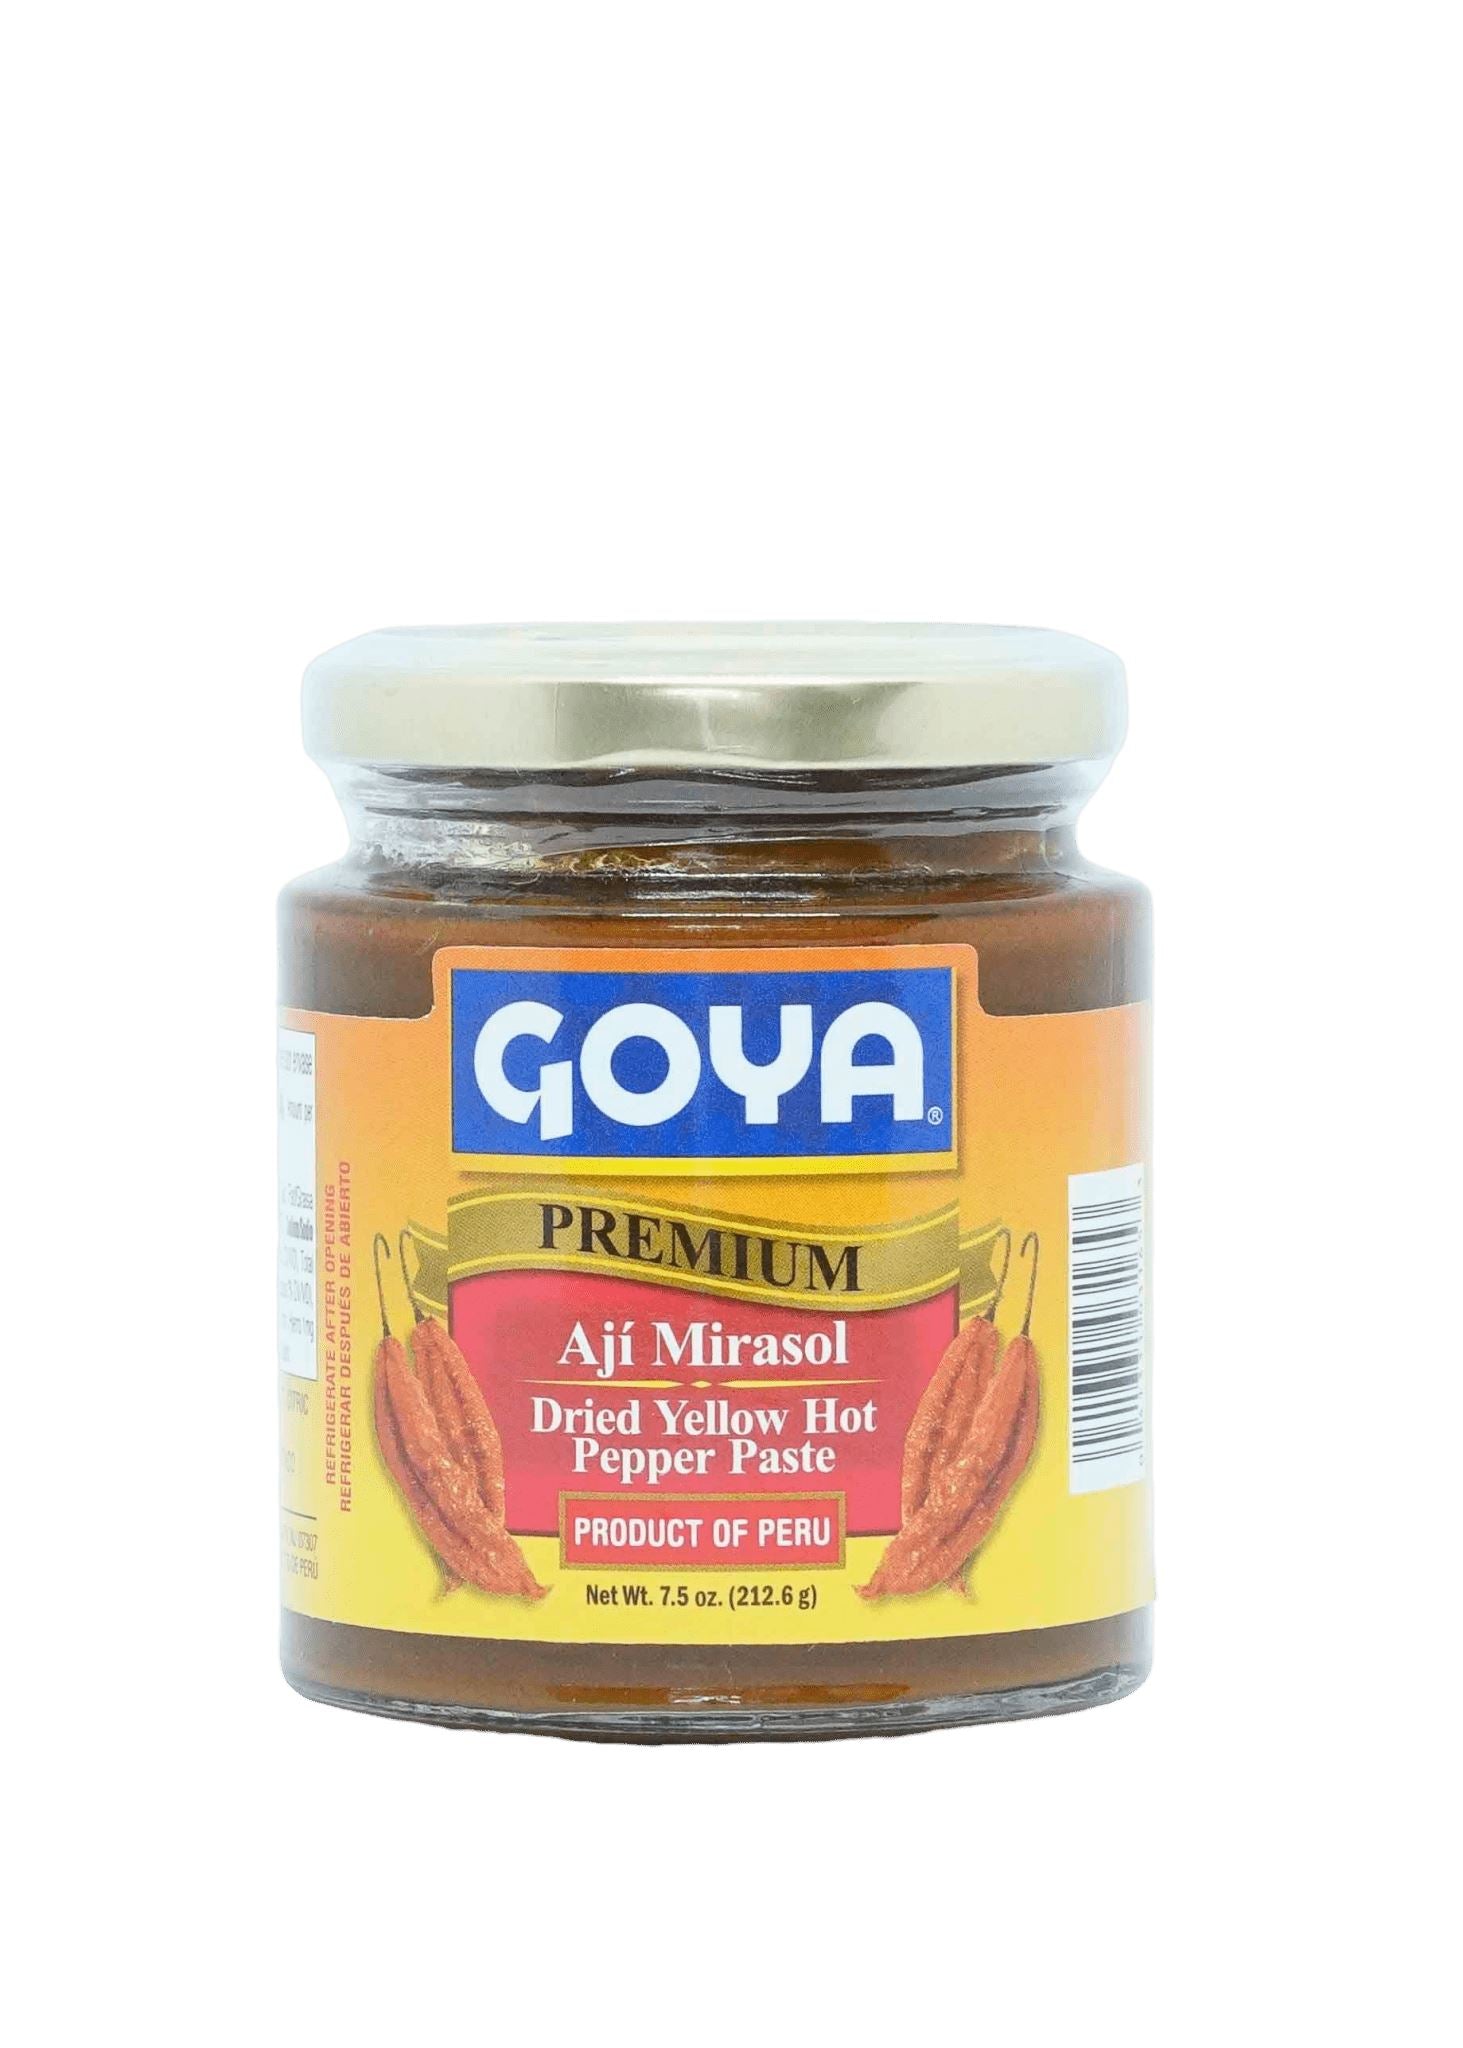 Goya Mirasol Pepper Paste 212g Chillies Goya 